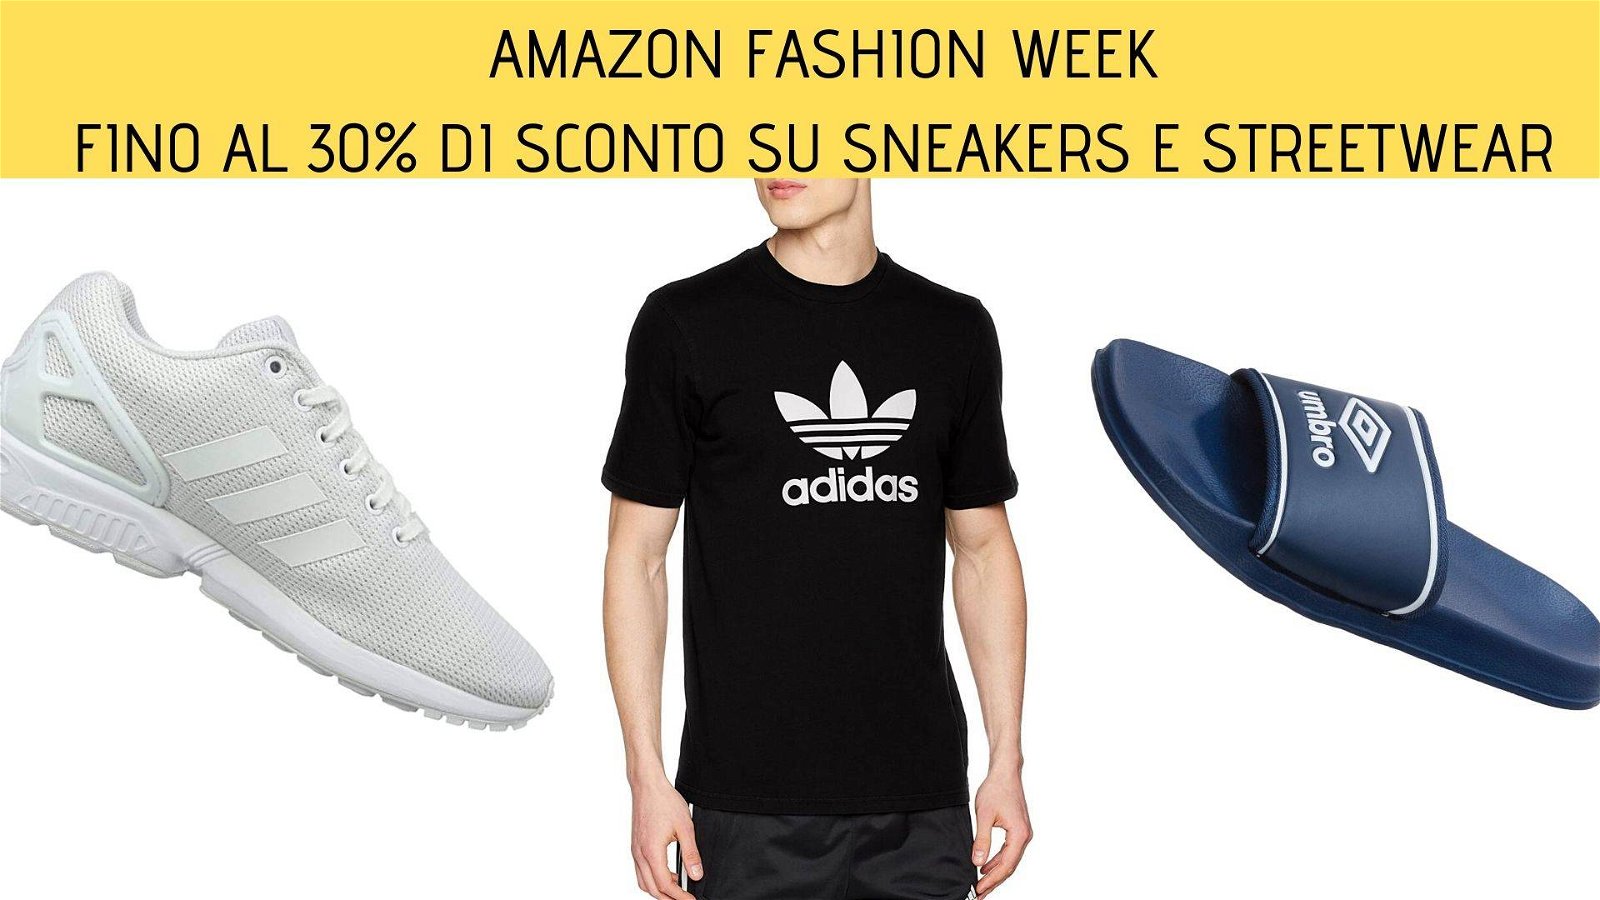 Immagine di Fino al 30% di sconto su sneakers e streetwear per la Amazon Fashion Week